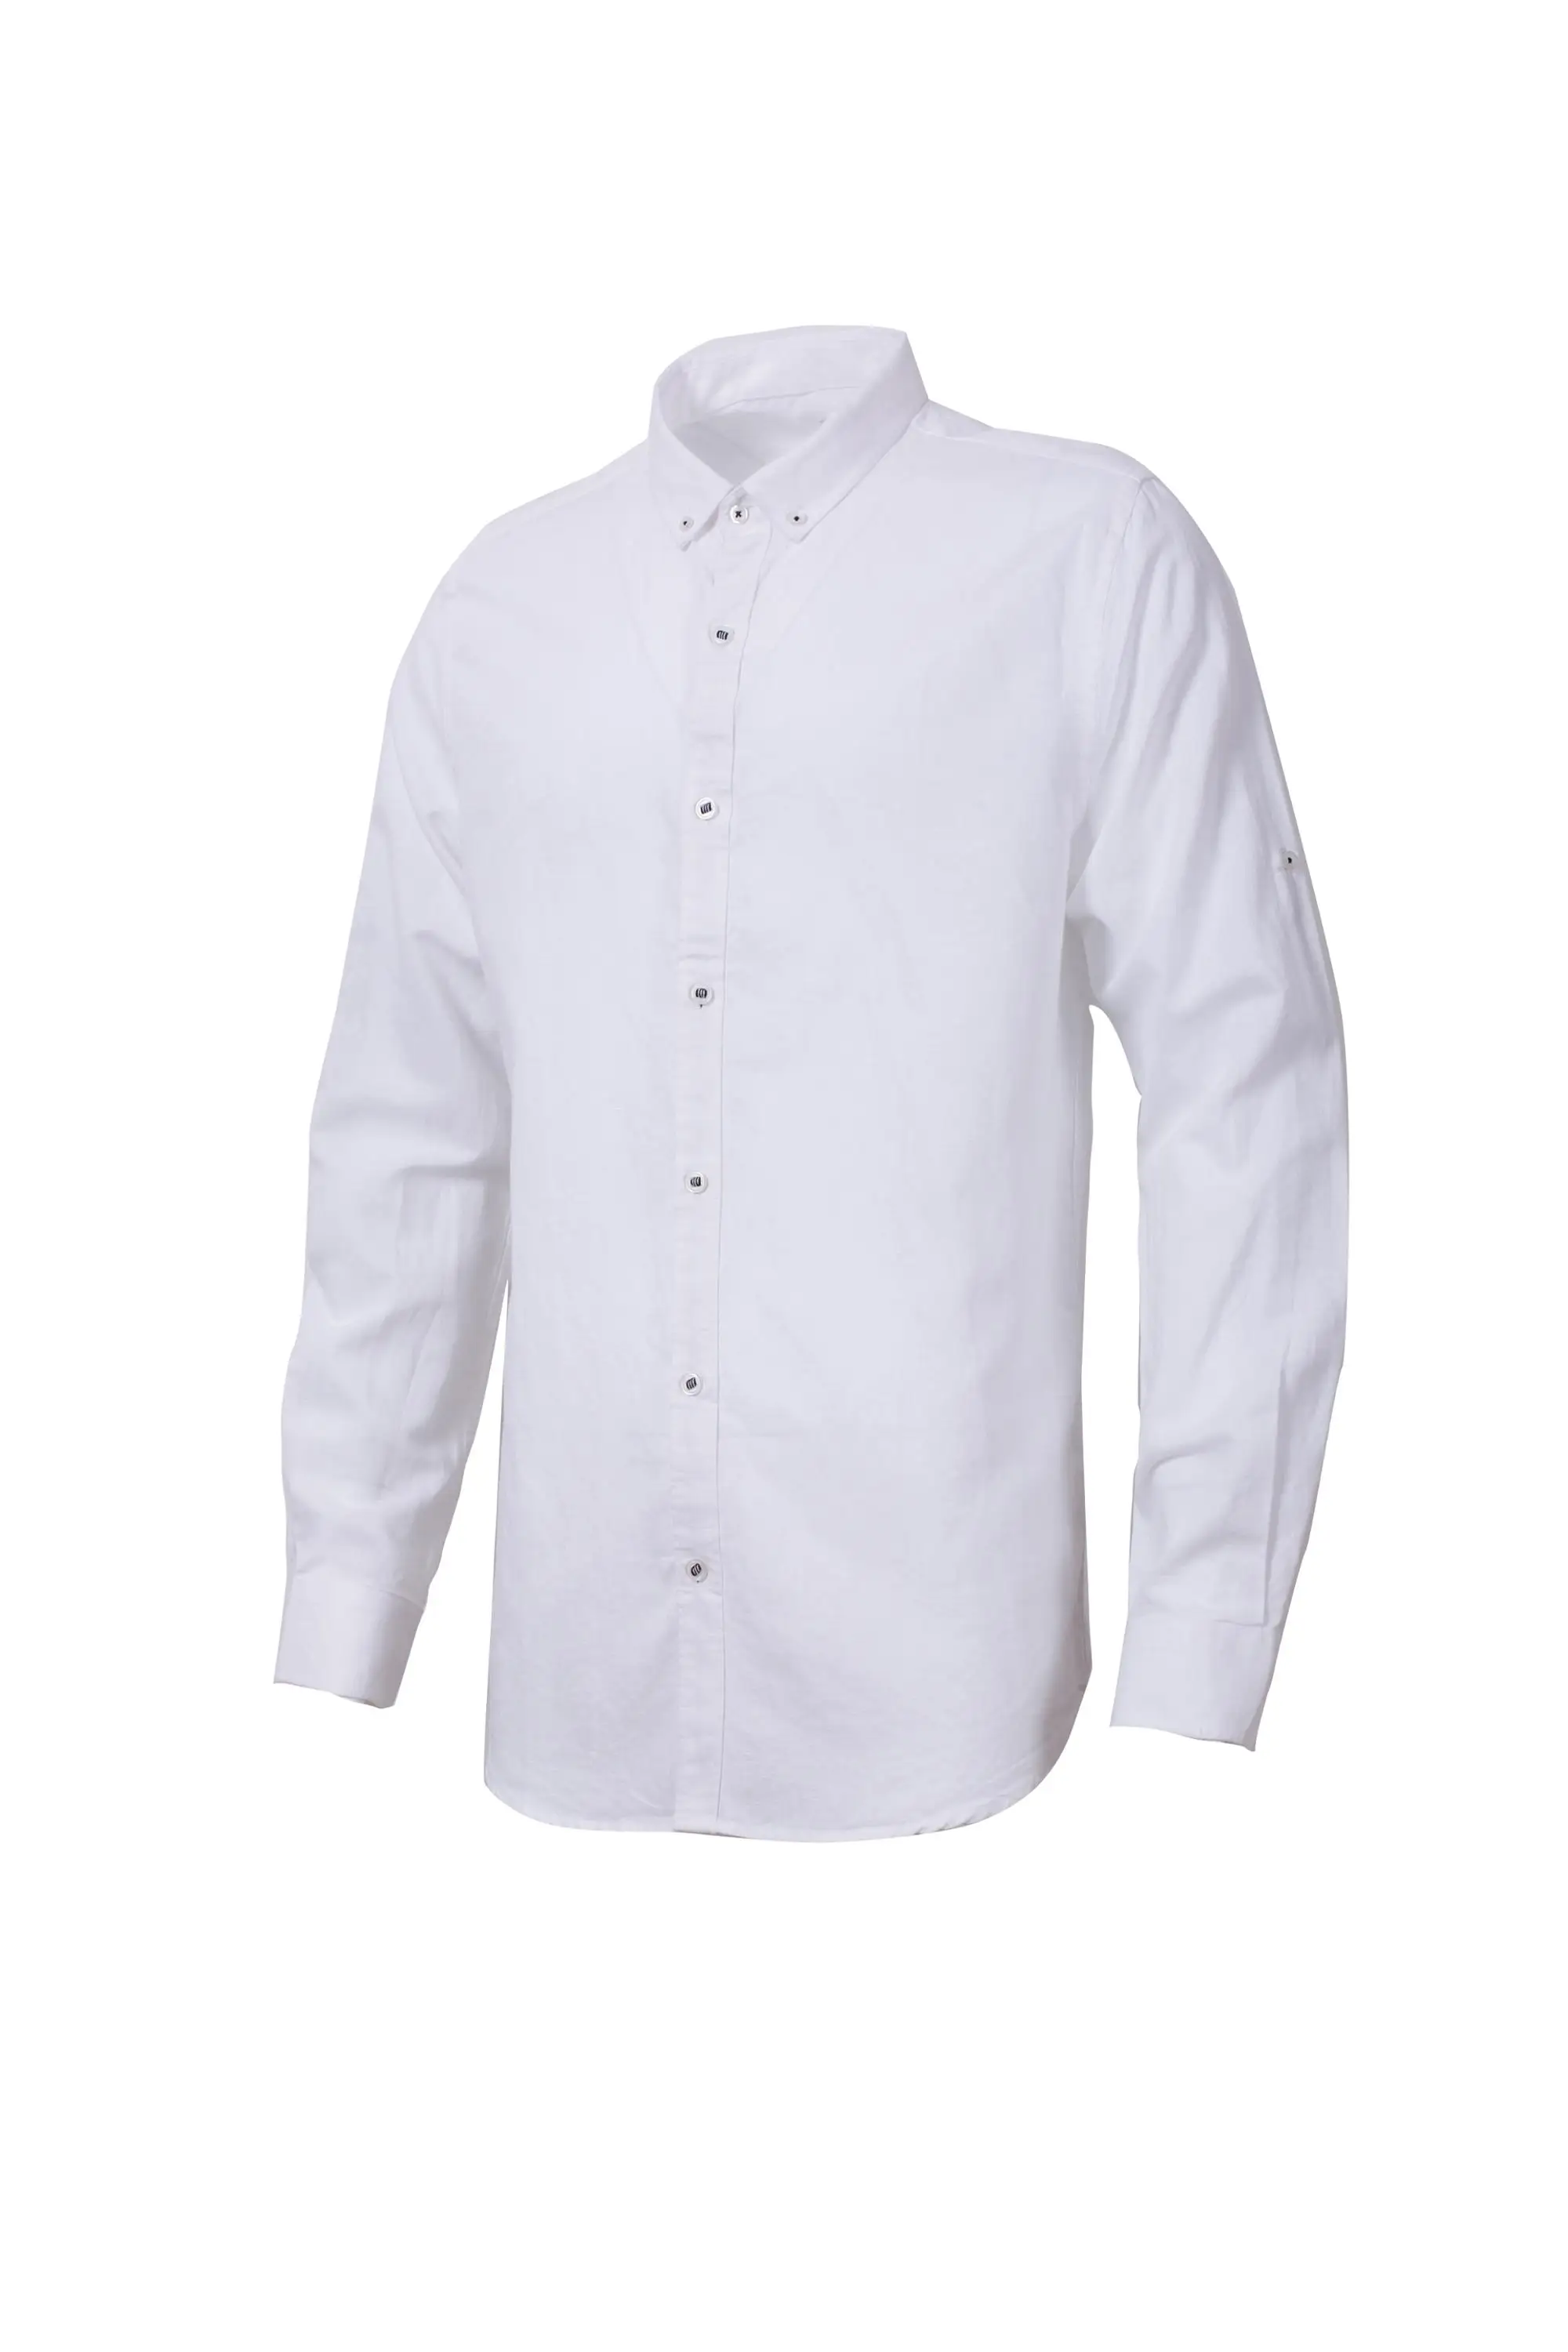 Pria Kemeja Desain Lengan Panjang Putih T Shirt Pembuatan Kapas Polo